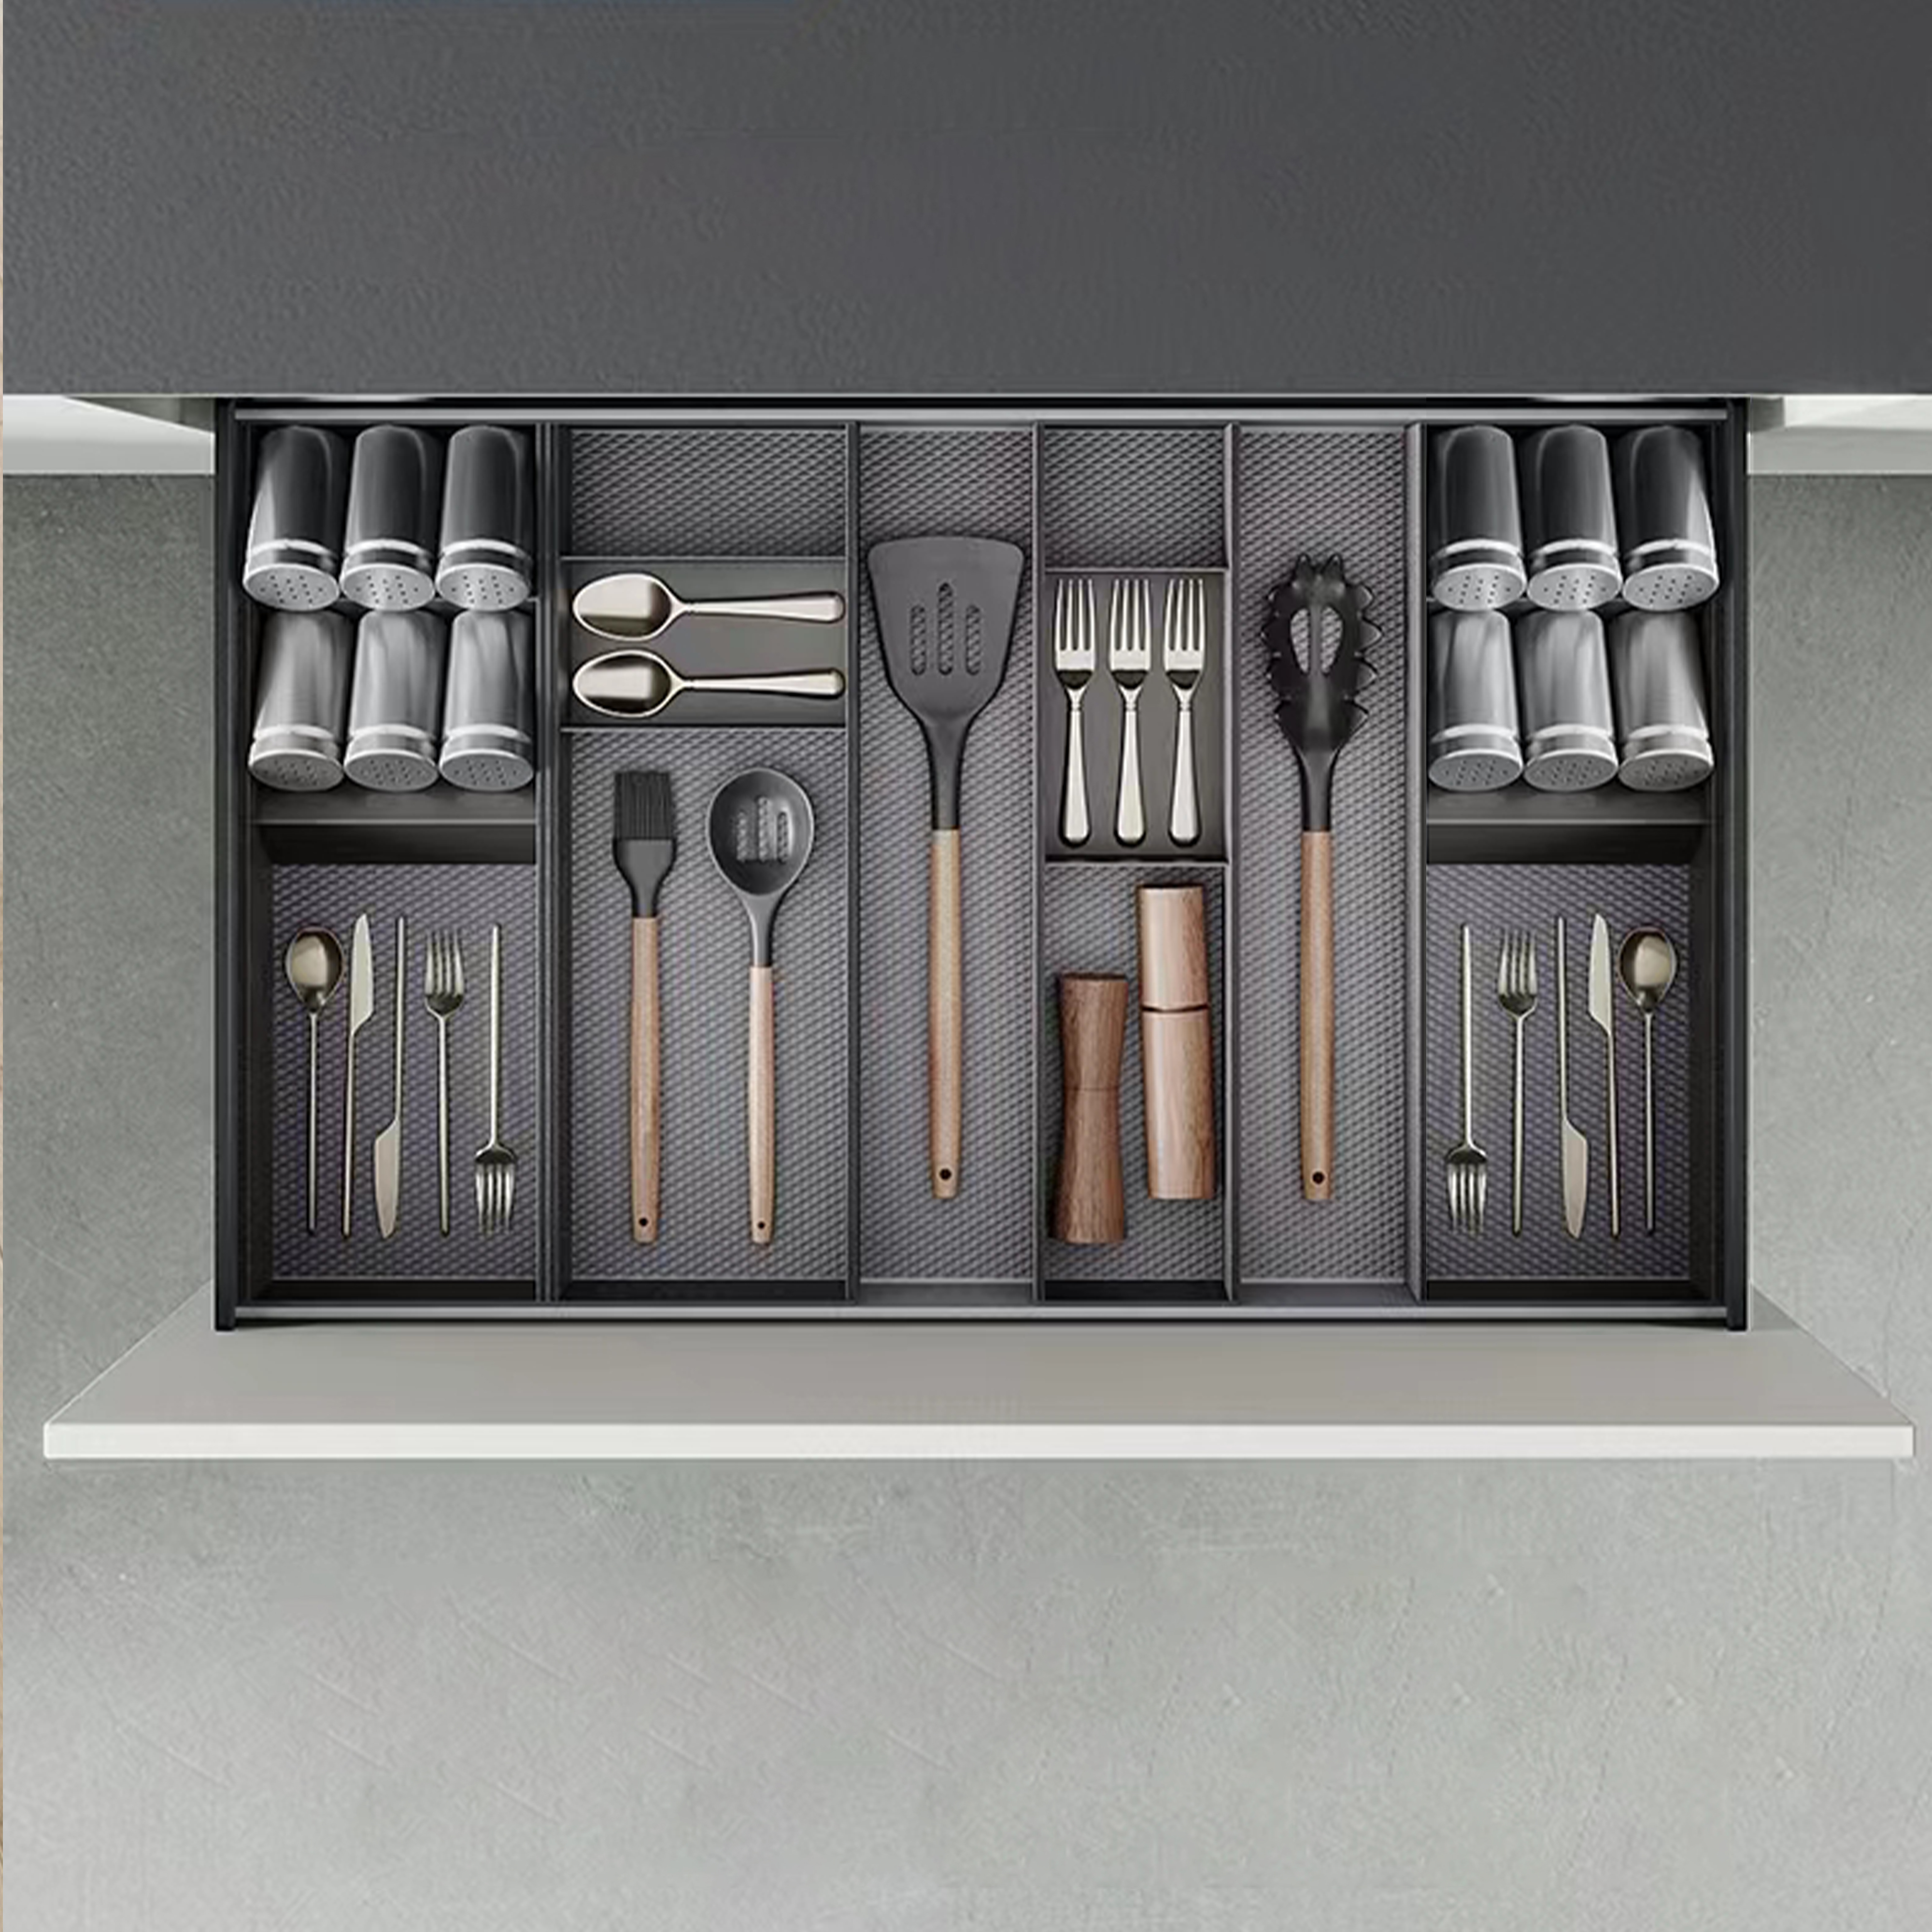  Organisateur incline Orderbox pour tiroir, 150x470 mm, Gris anthracite, Acier et Bois